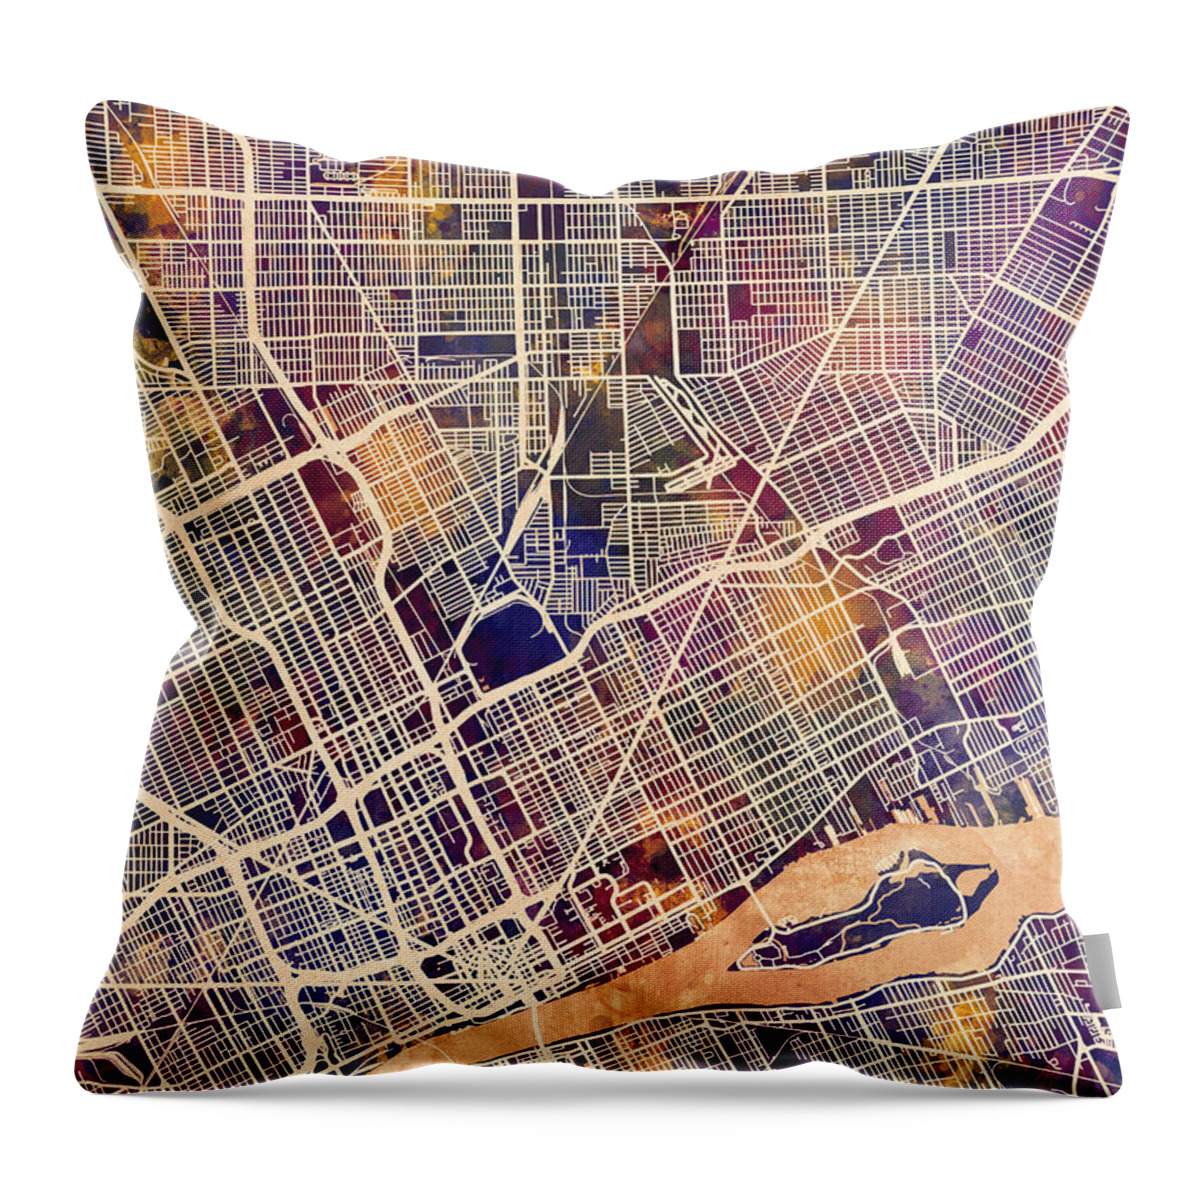 Detroit Throw Pillow featuring the digital art Detroit Michigan City Map by Michael Tompsett